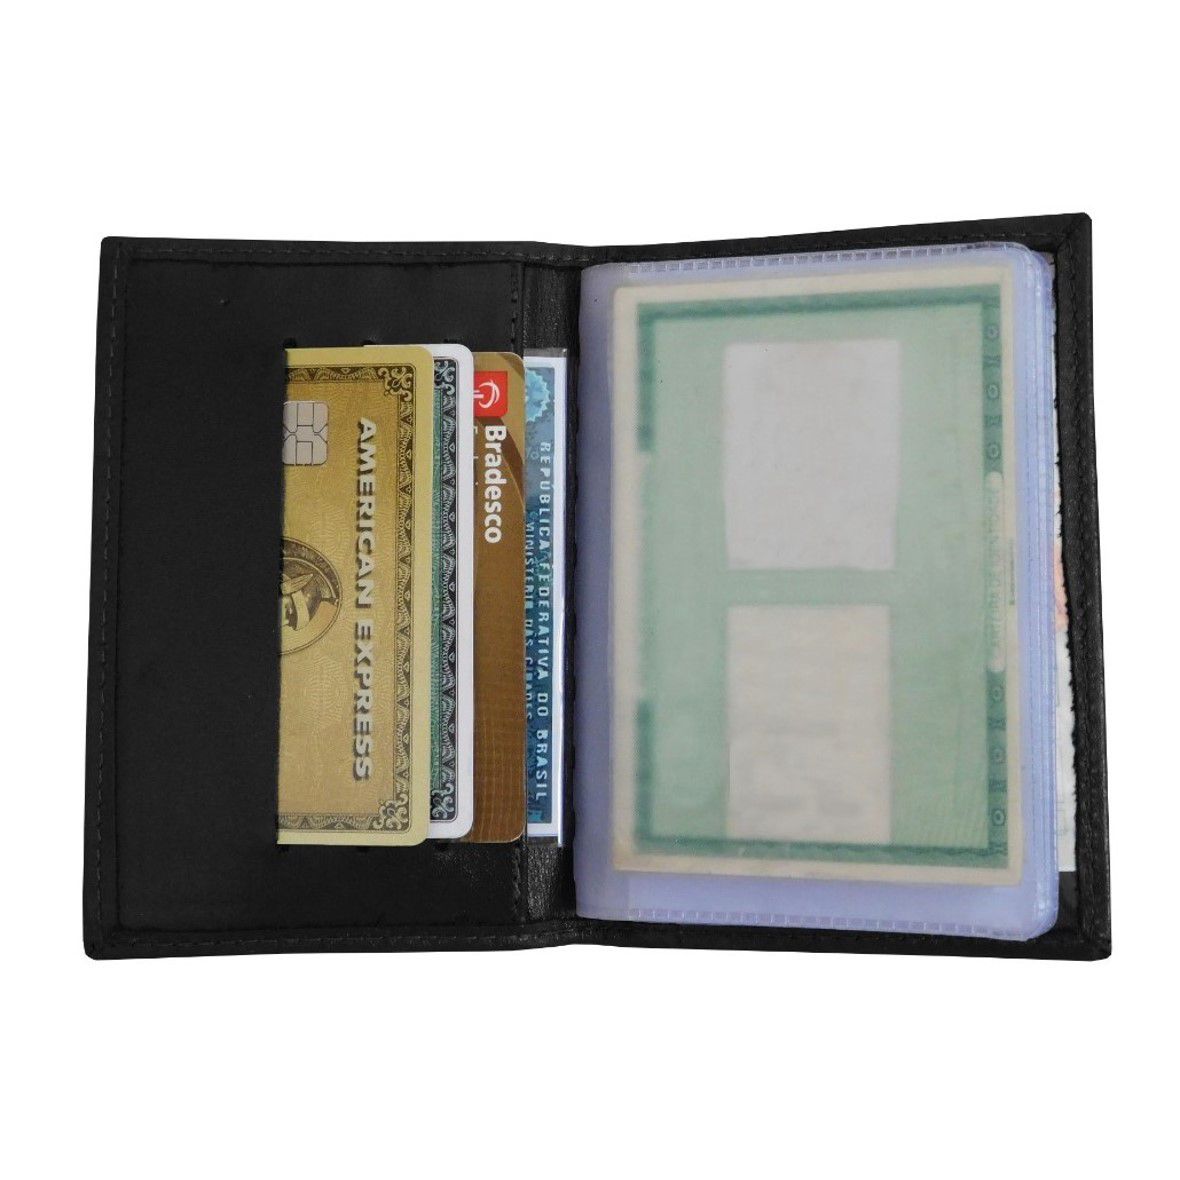 Carteira 33 - Unissex de Bolso em Couro (294TN33) Porta Cartão, Dinheiro, Documento de Veículo (CRLV), CNH, RG